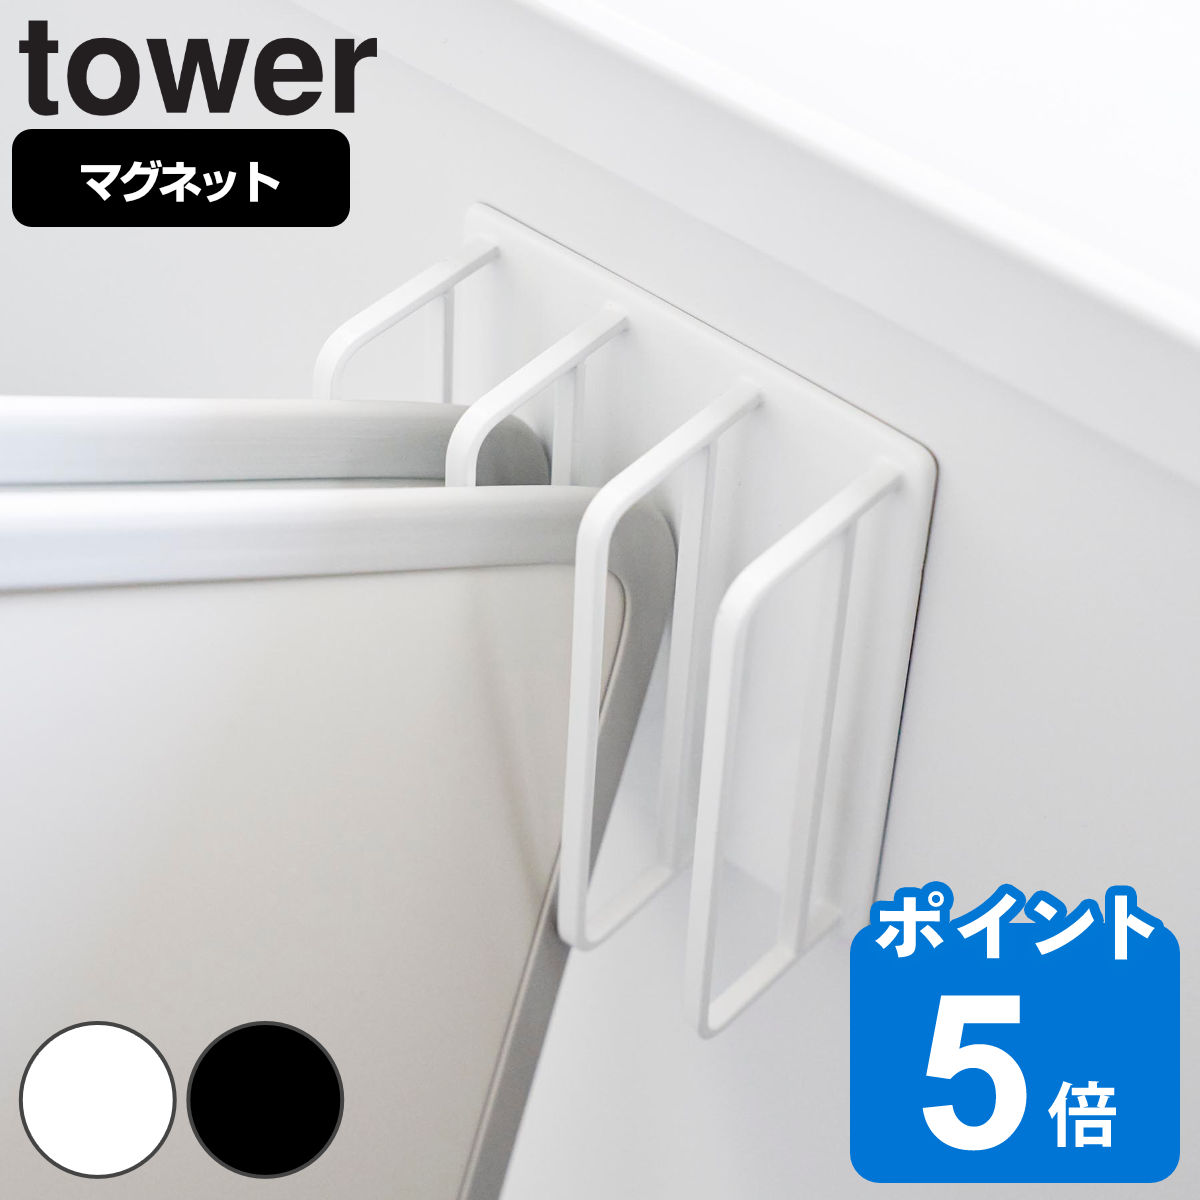 山崎実業 tower マグネットバスルーム風呂蓋ドライハンガー タワー